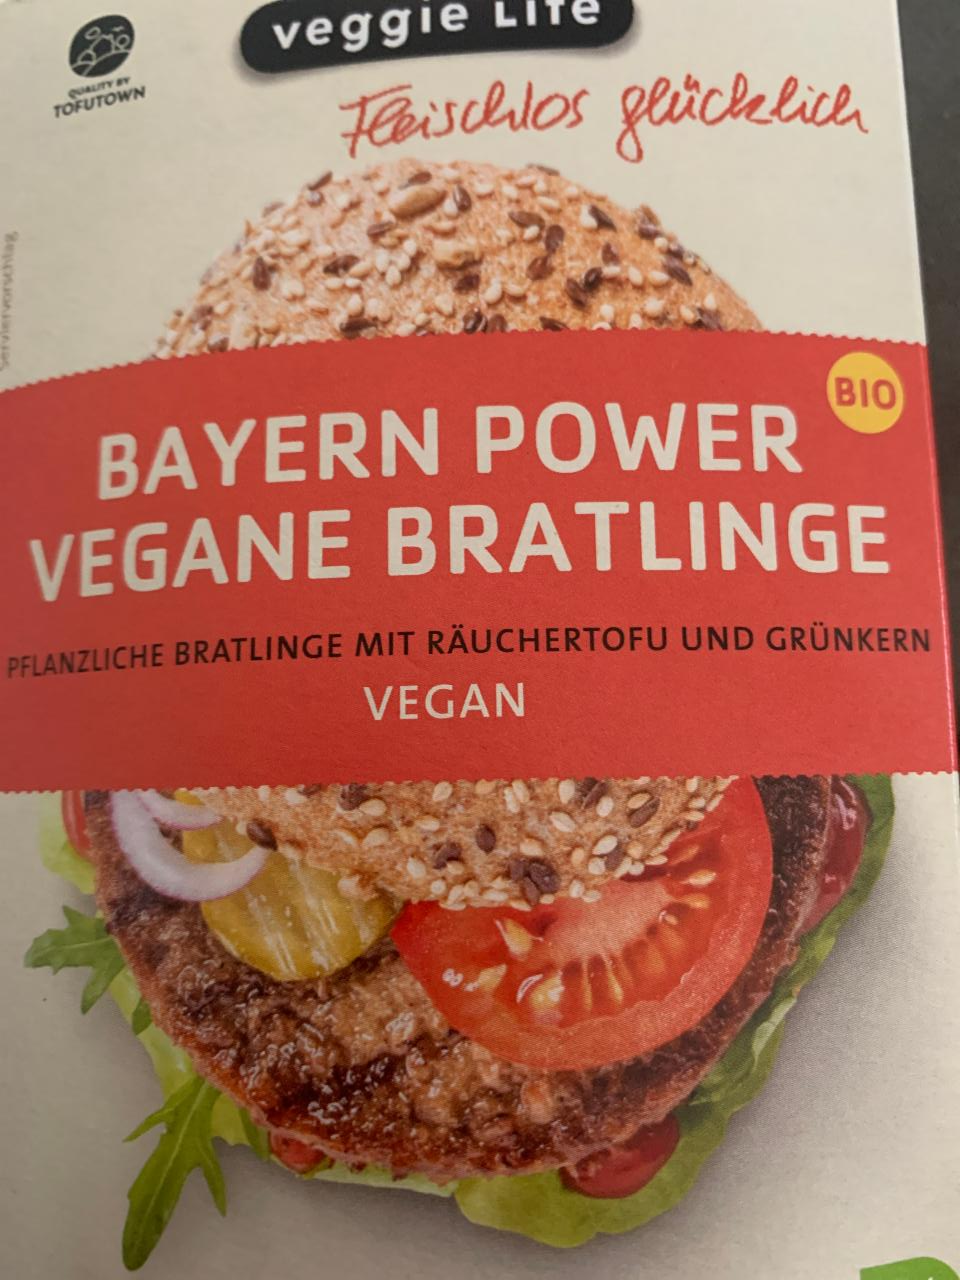 Fotografie - Bio Bayern power vegane Bratlinge Veggie Life